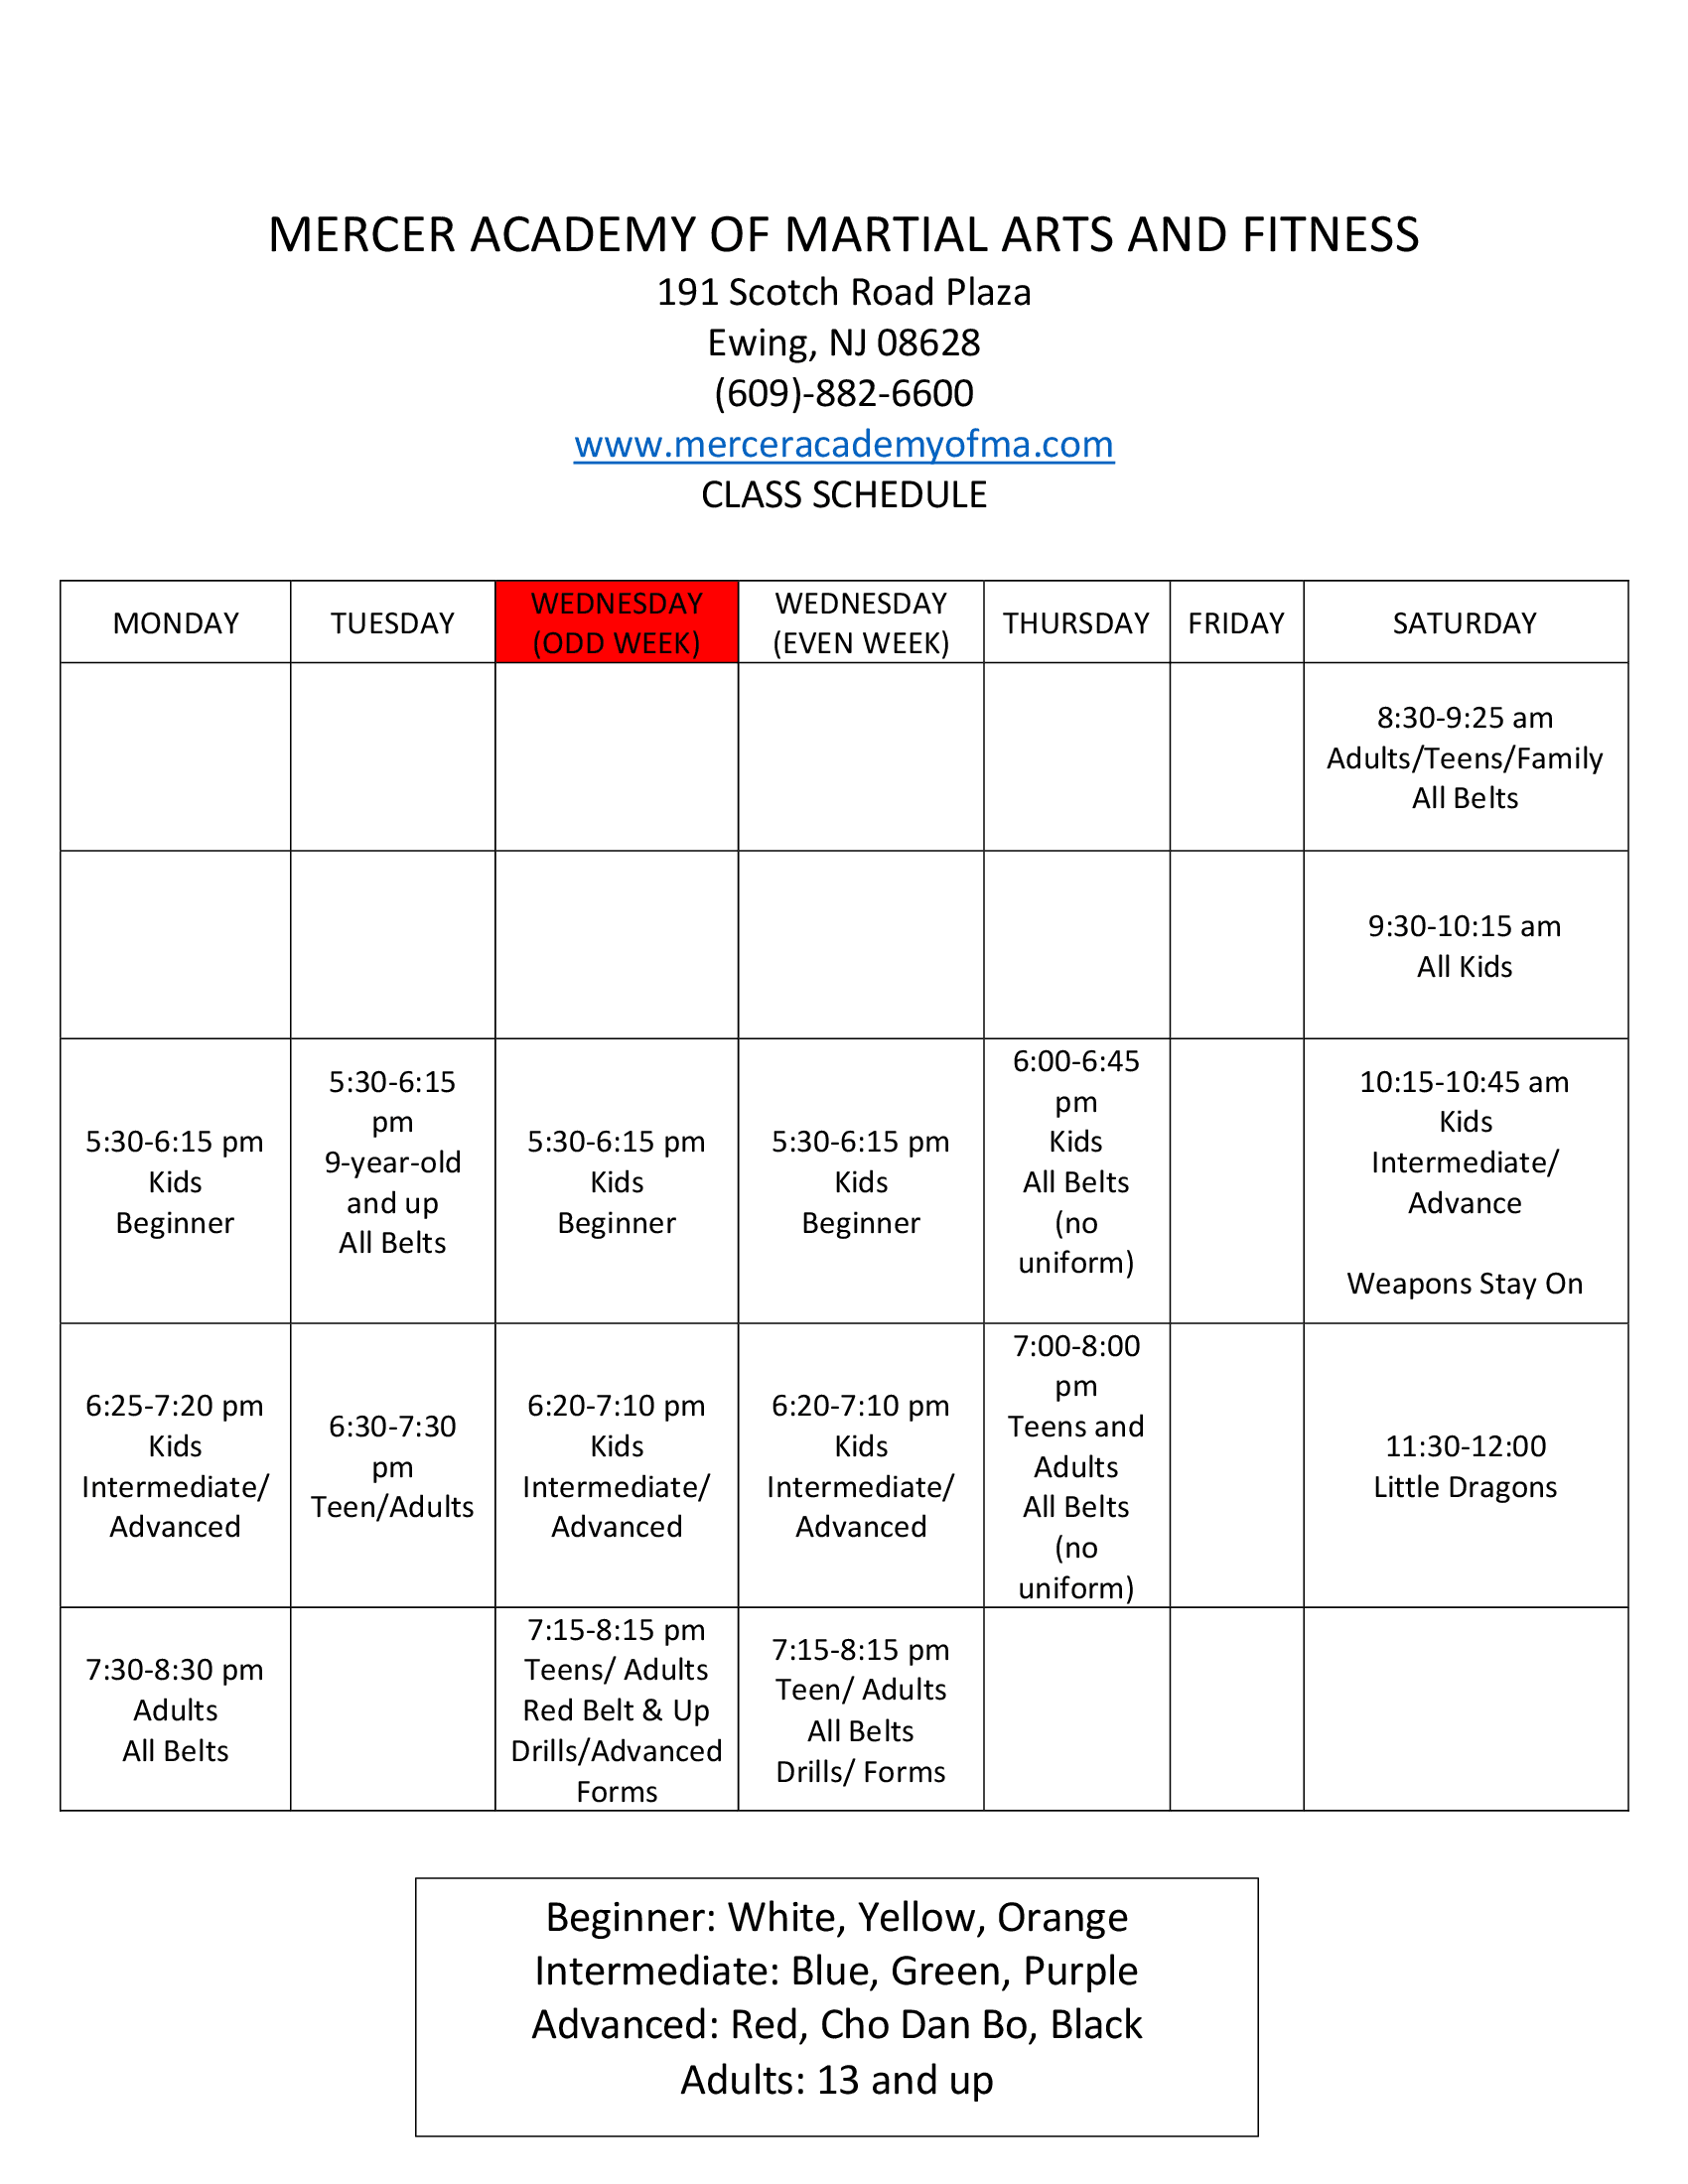 Class Schedule – Mercer Academy of Martial Arts